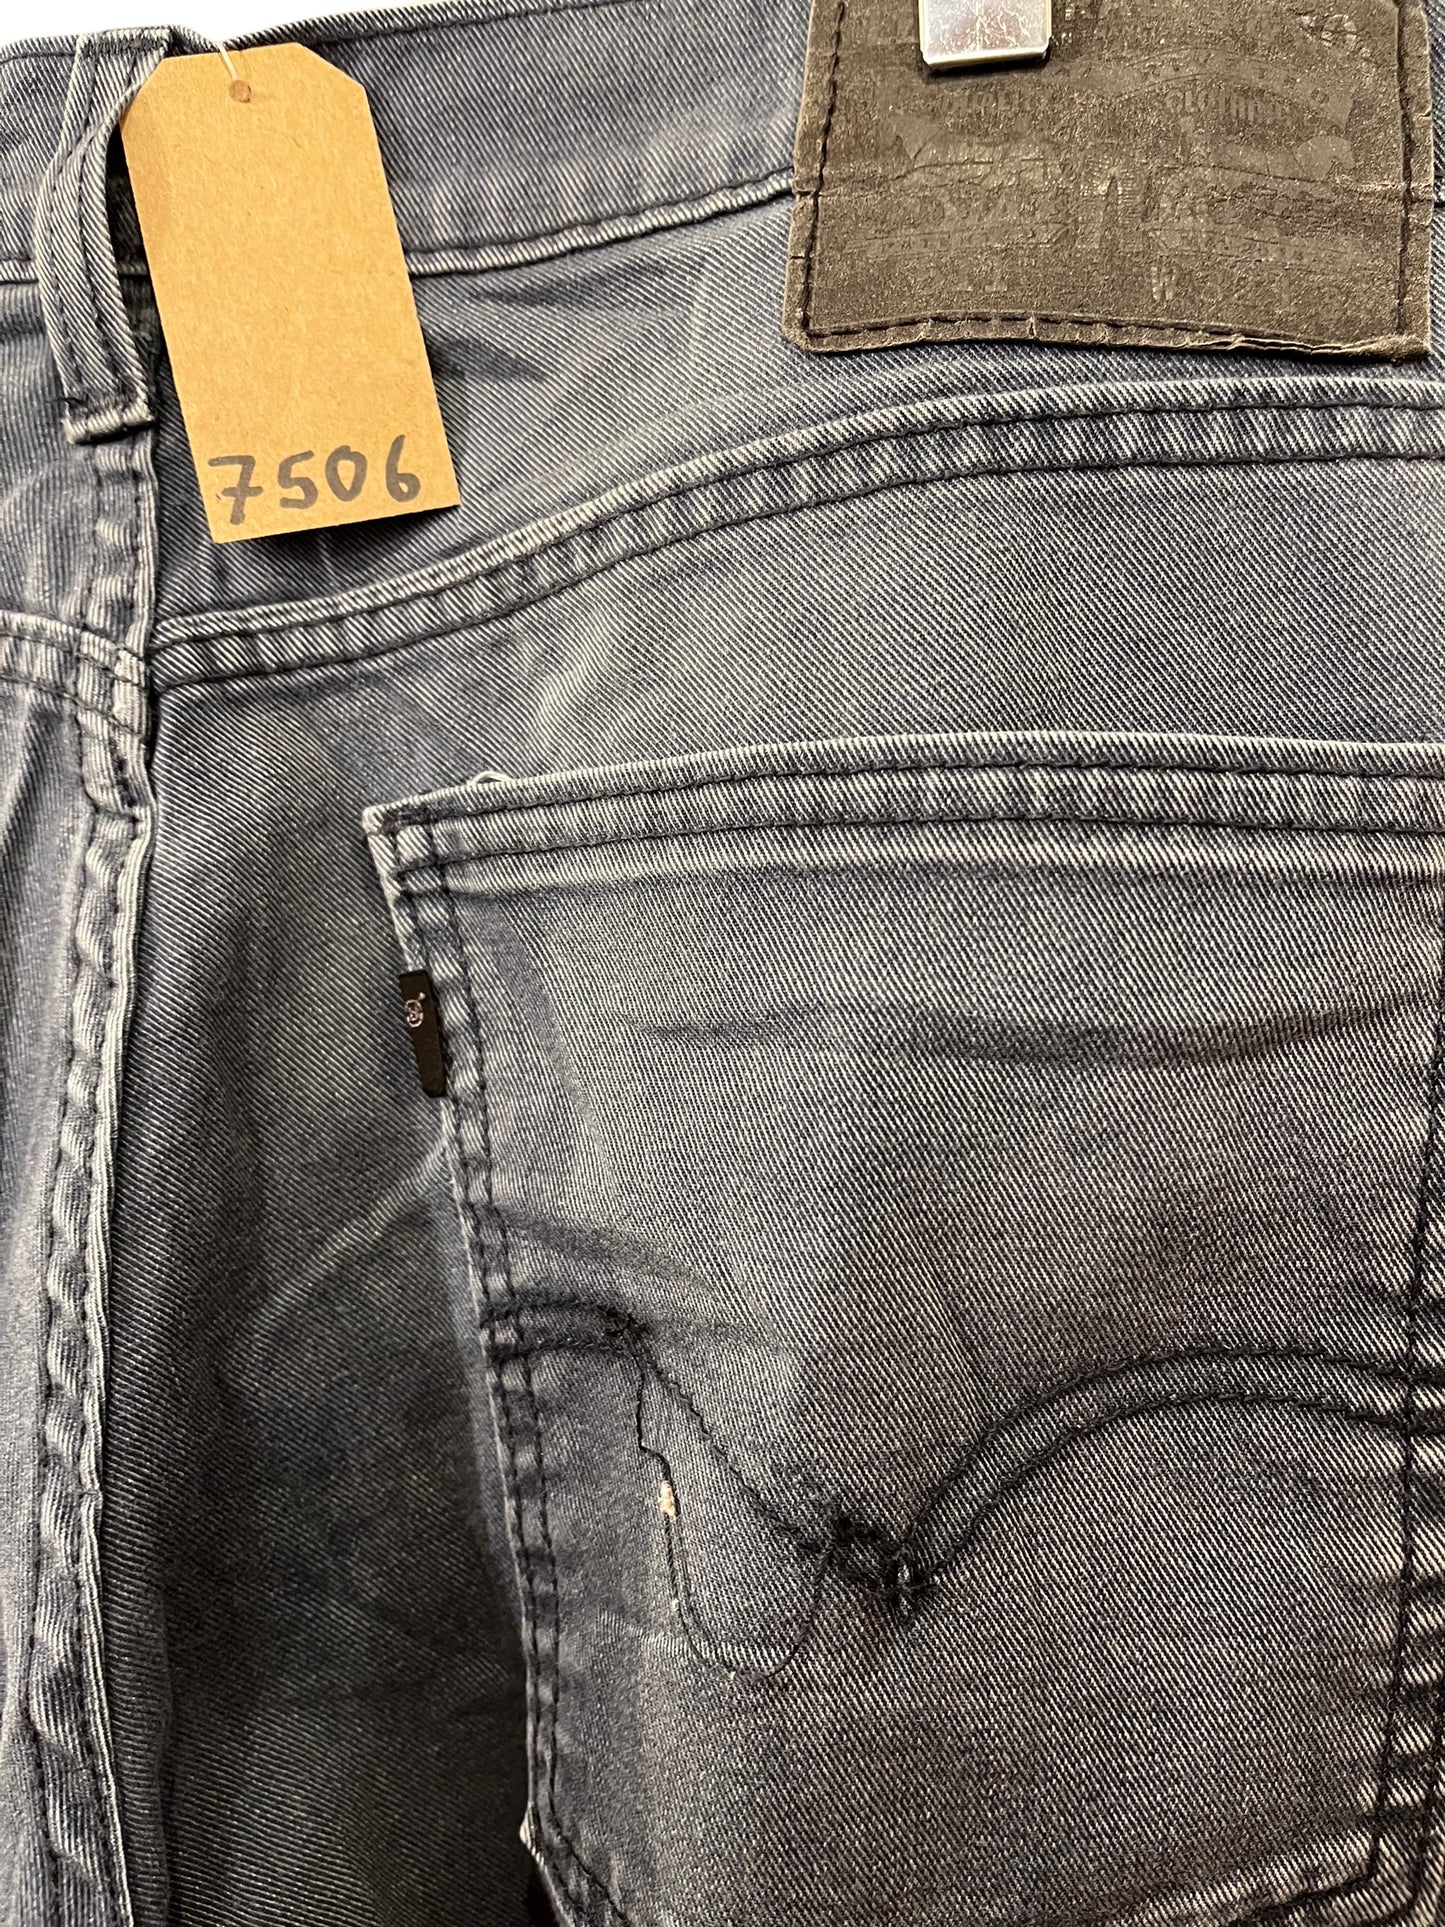 Levi 511 jeans (32x34)